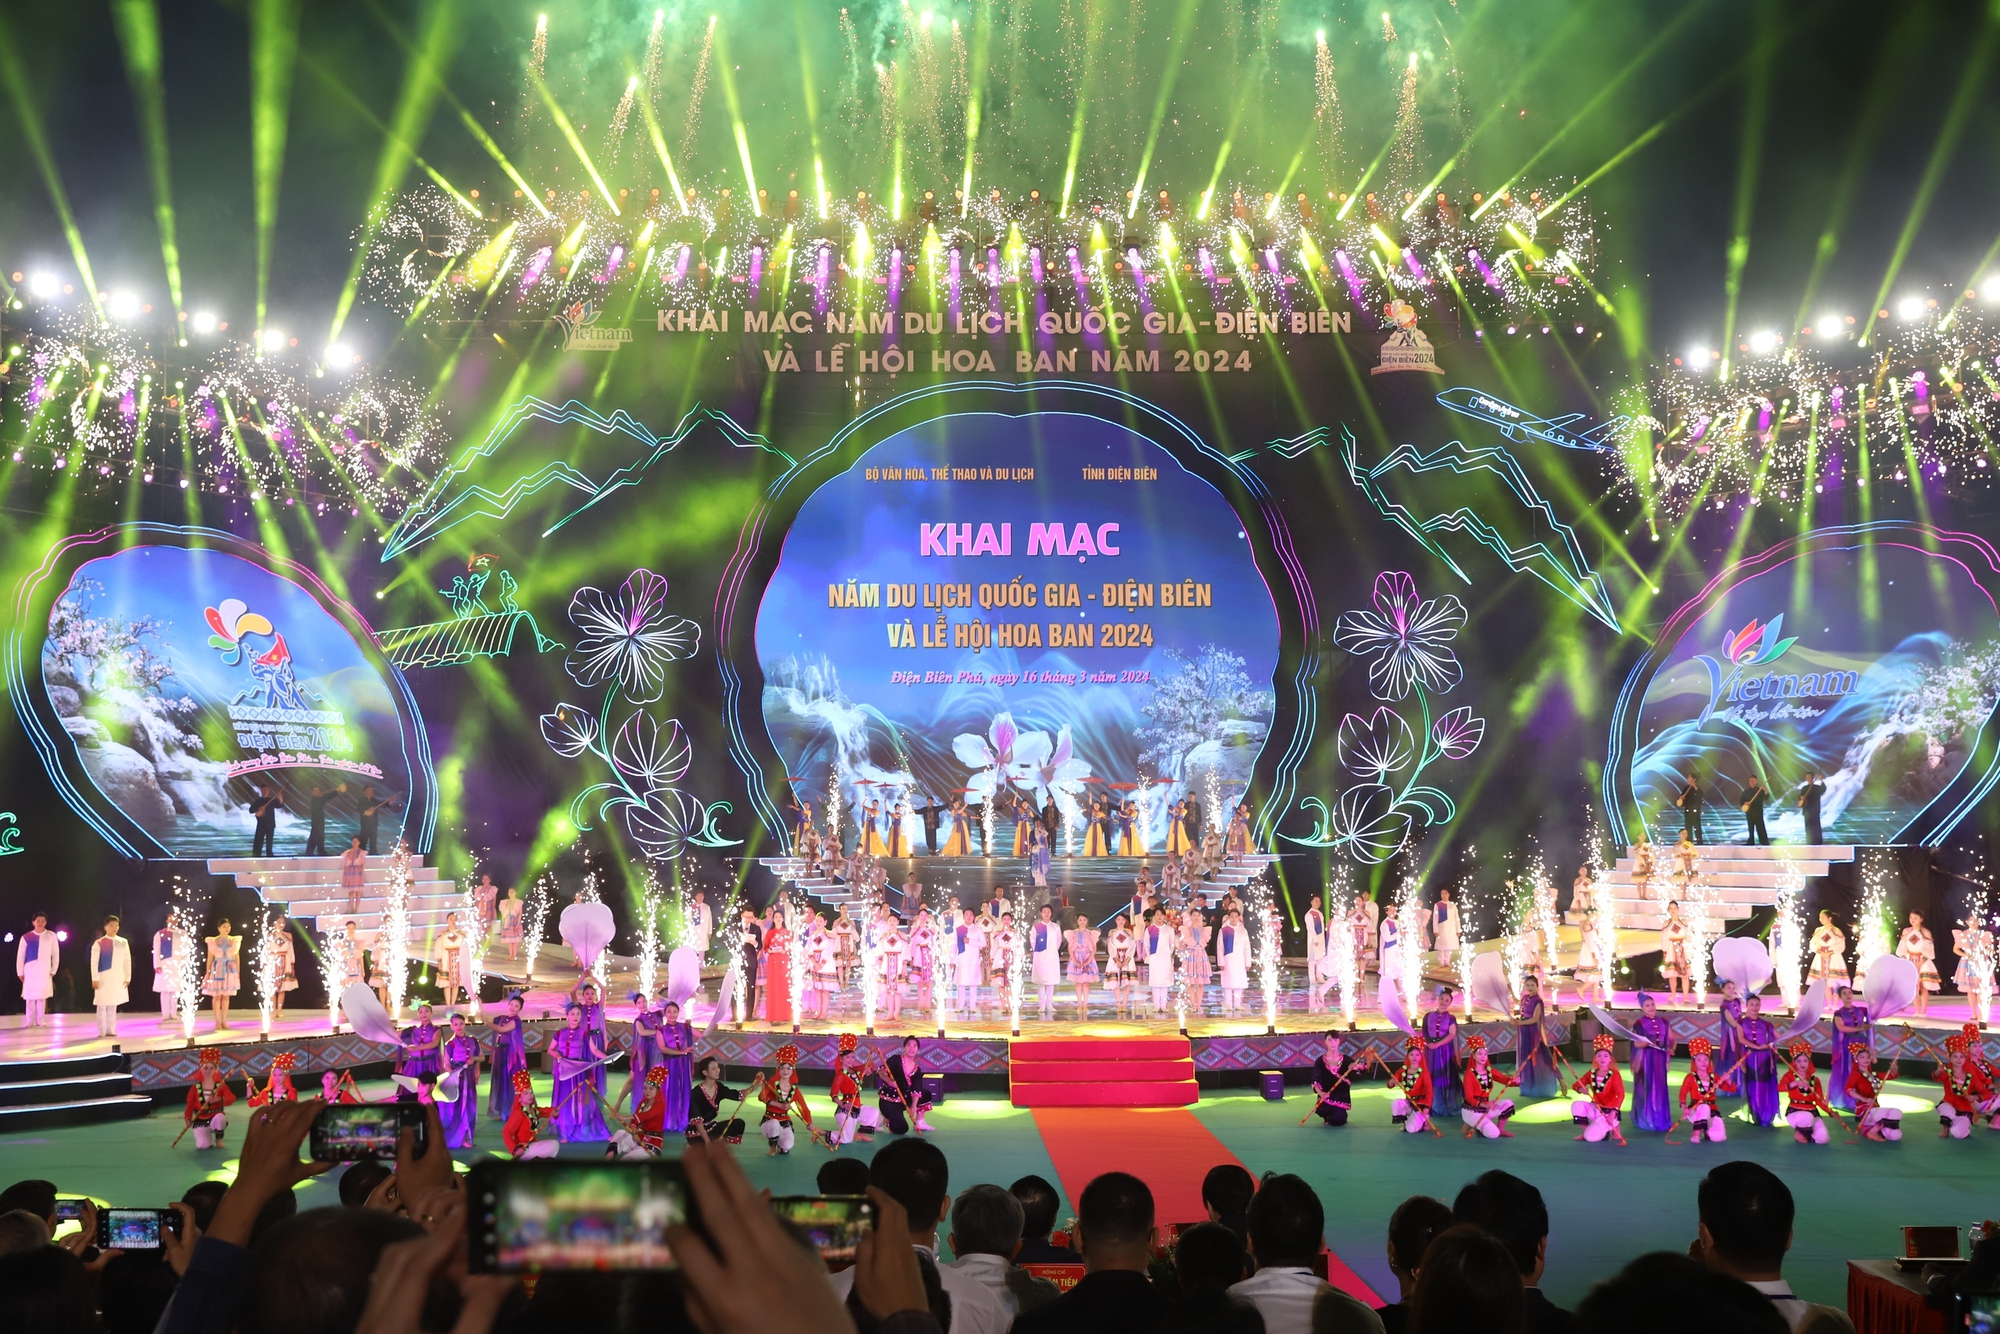 Mãn nhãn với Lễ khai mạc Năm du lịch Quốc gia - Điện Biên và Lễ hội hoa Ban 2024- Ảnh 1.